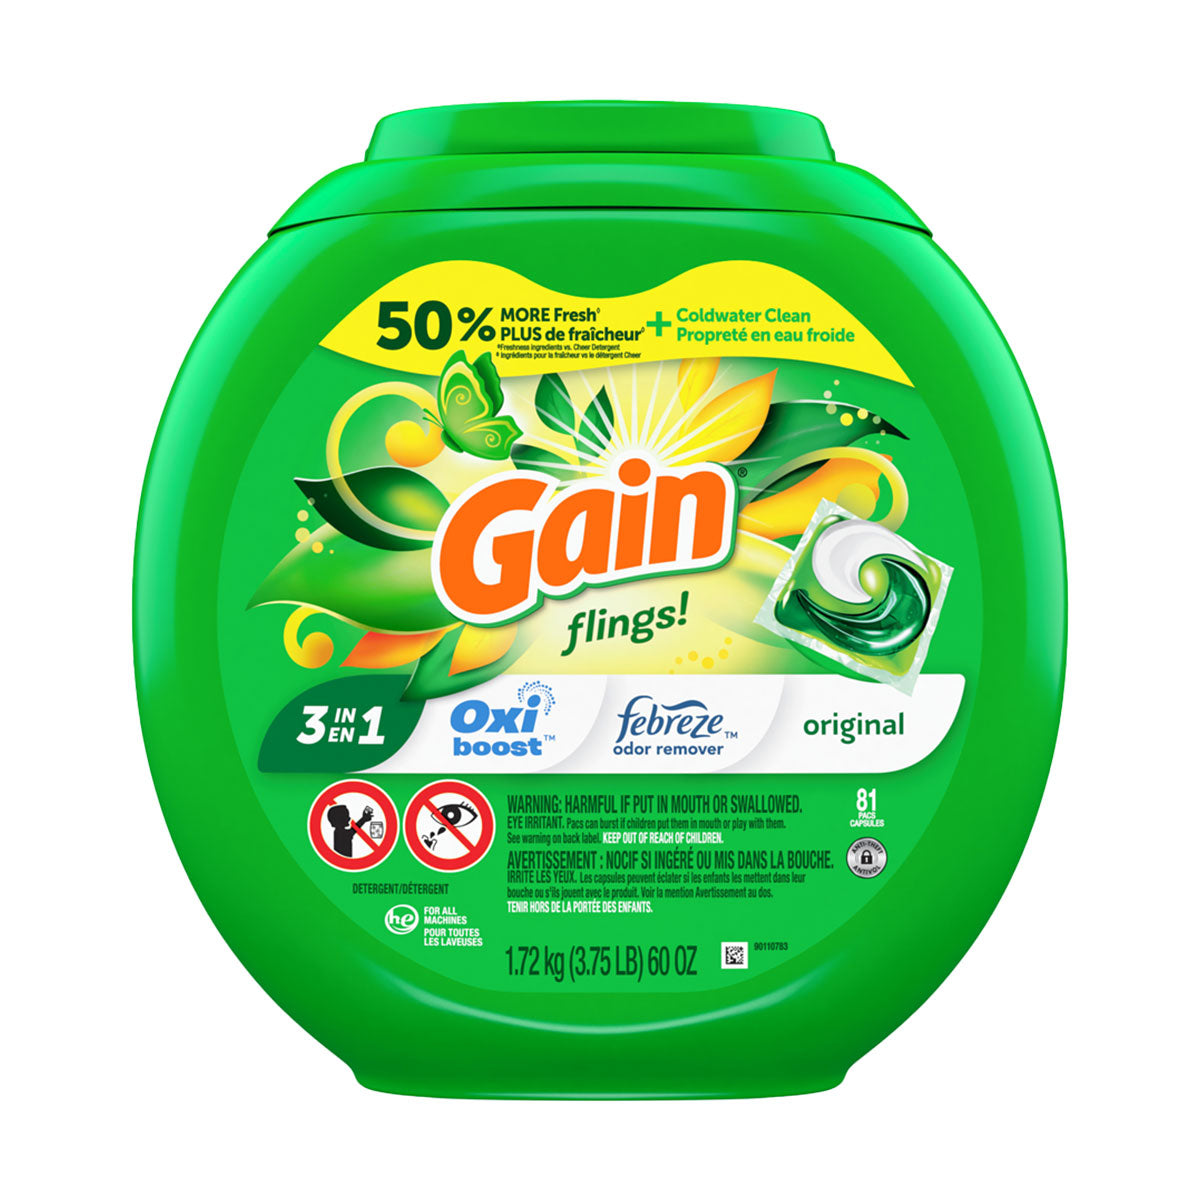 Detergente para ropa en cápsulas Gain Original Flings 3 en 1 Oxi Boost con Febreze, (81 unidades)